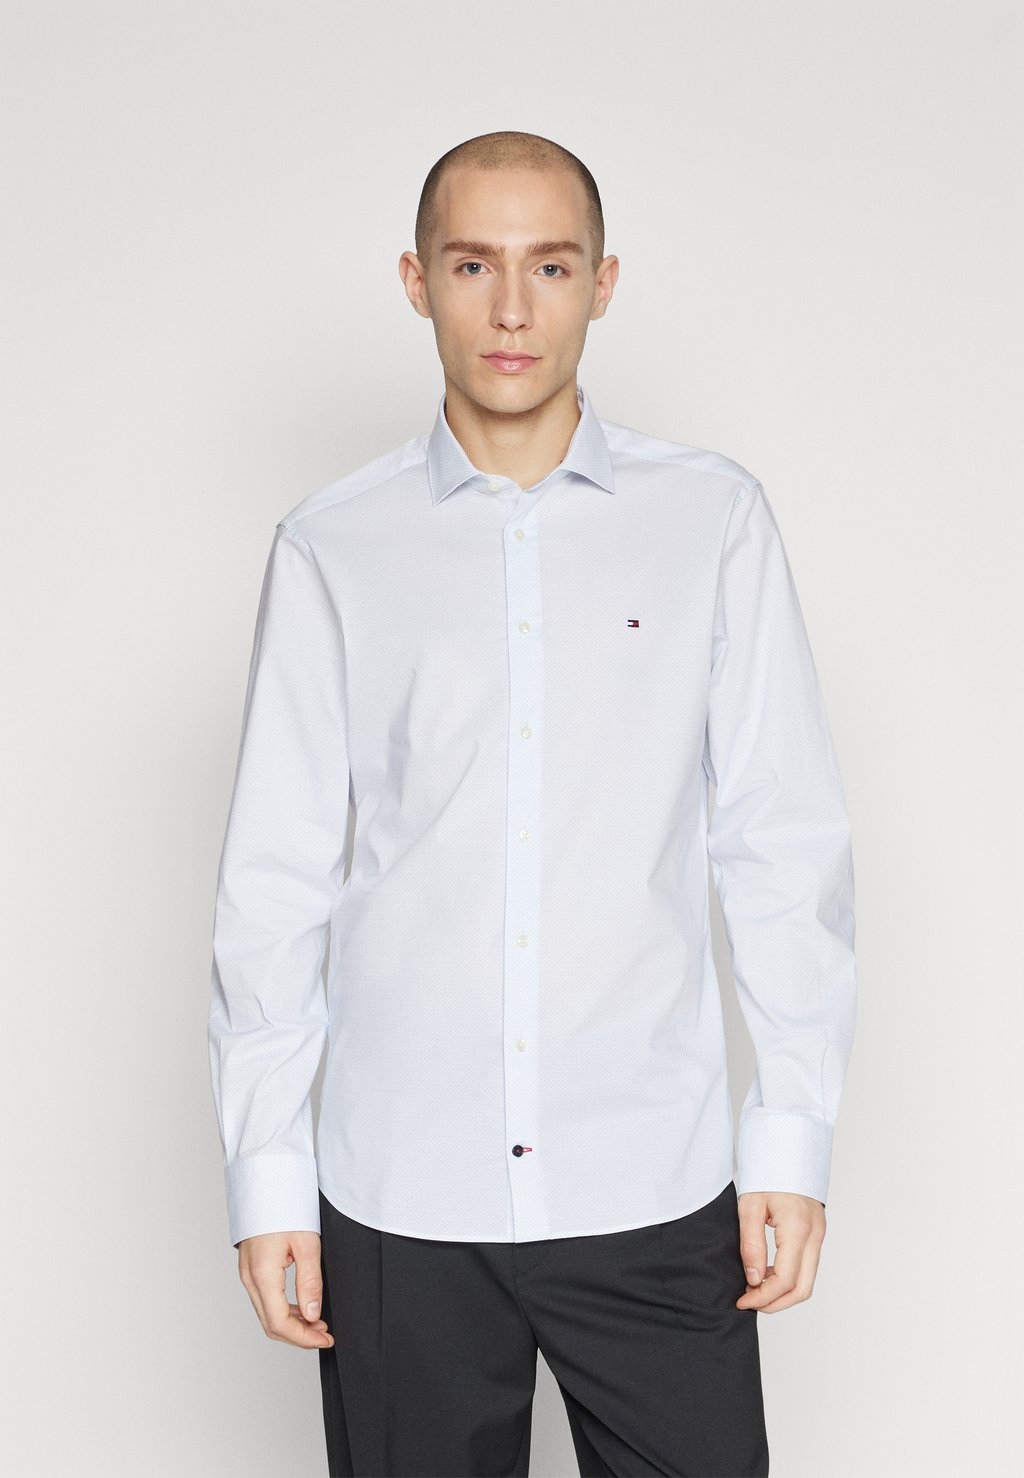 Элегантная рубашка Micro Print Shirt Tommy Hilfiger, цвет optic white/light blue